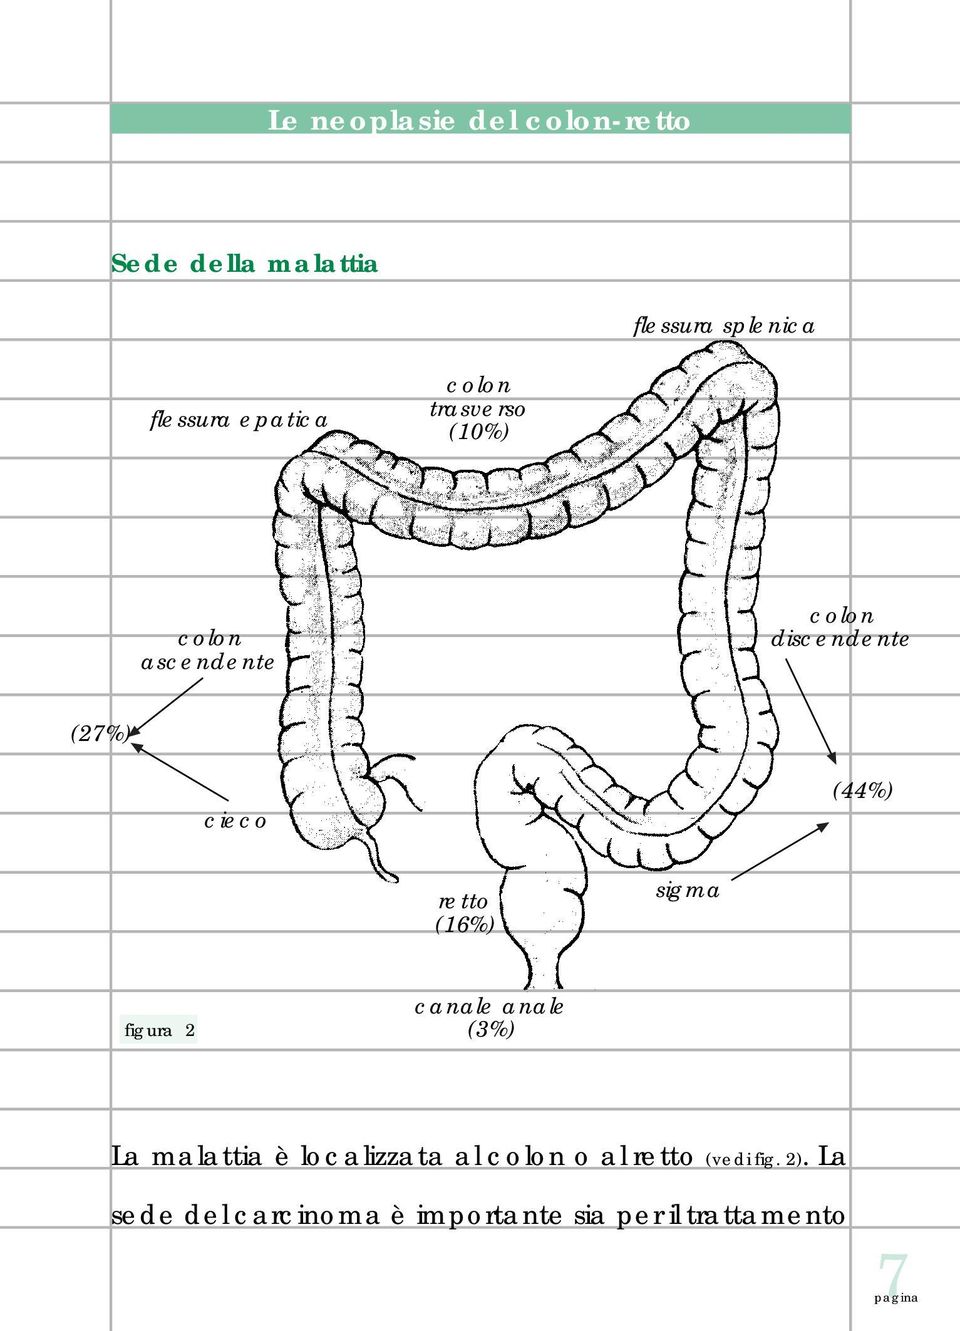 retto (16%) sigma figura 2 canale anale (3%) La malattia è localizzata al colon o